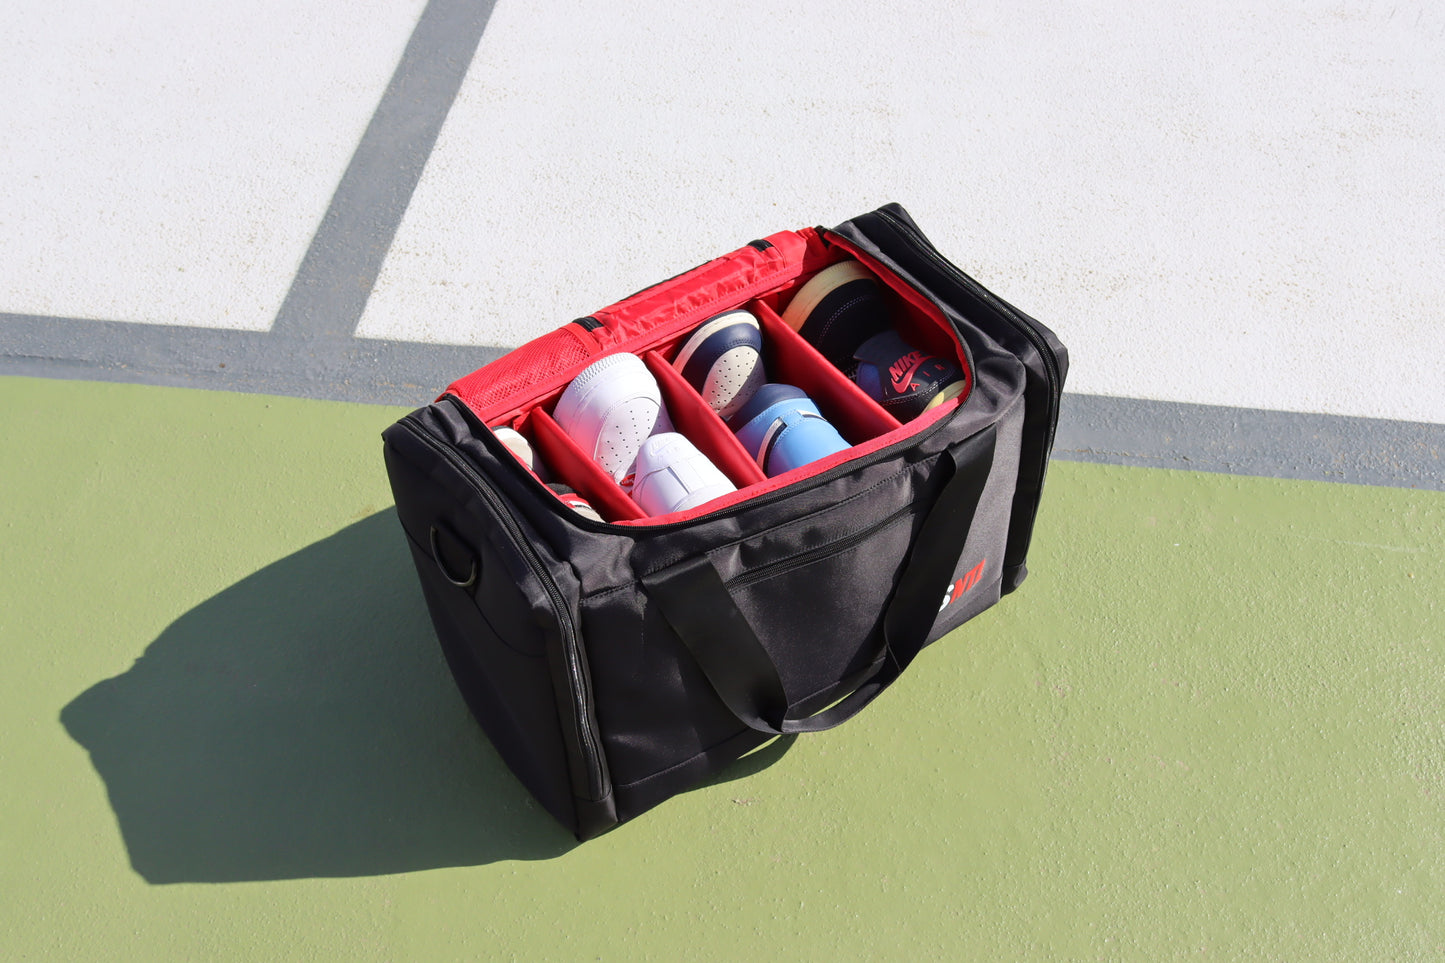 Sneaker Travel Duffel Bag [Black/Red]